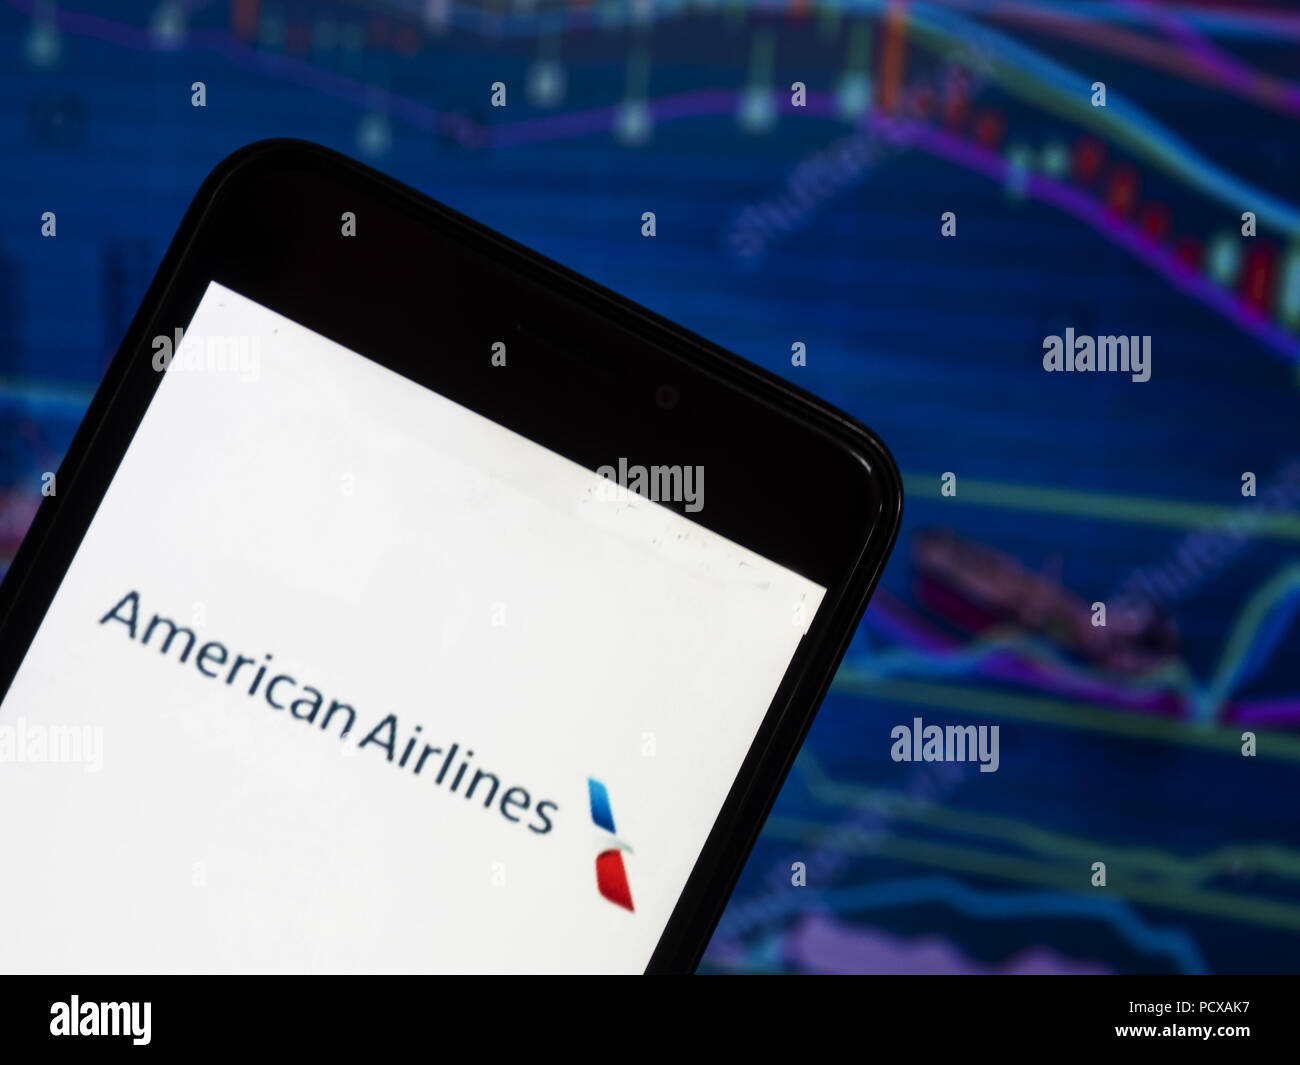 Kiew, Ukraine. 4 Aug, 2018. Die American Airlines logo gesehen auf einem Smartphone mit dem Hintergrund einer Börse shedle angezeigt. American Airlines, Inc. (AA) ist einer der wichtigsten USA Fluggesellschaft in Fort Worth, Texas, mit Hauptsitz in Dallas - Fort Worth Metroplex. Quelle: Igor Golovniov/SOPA Images/ZUMA Draht/Alamy leben Nachrichten Stockfoto